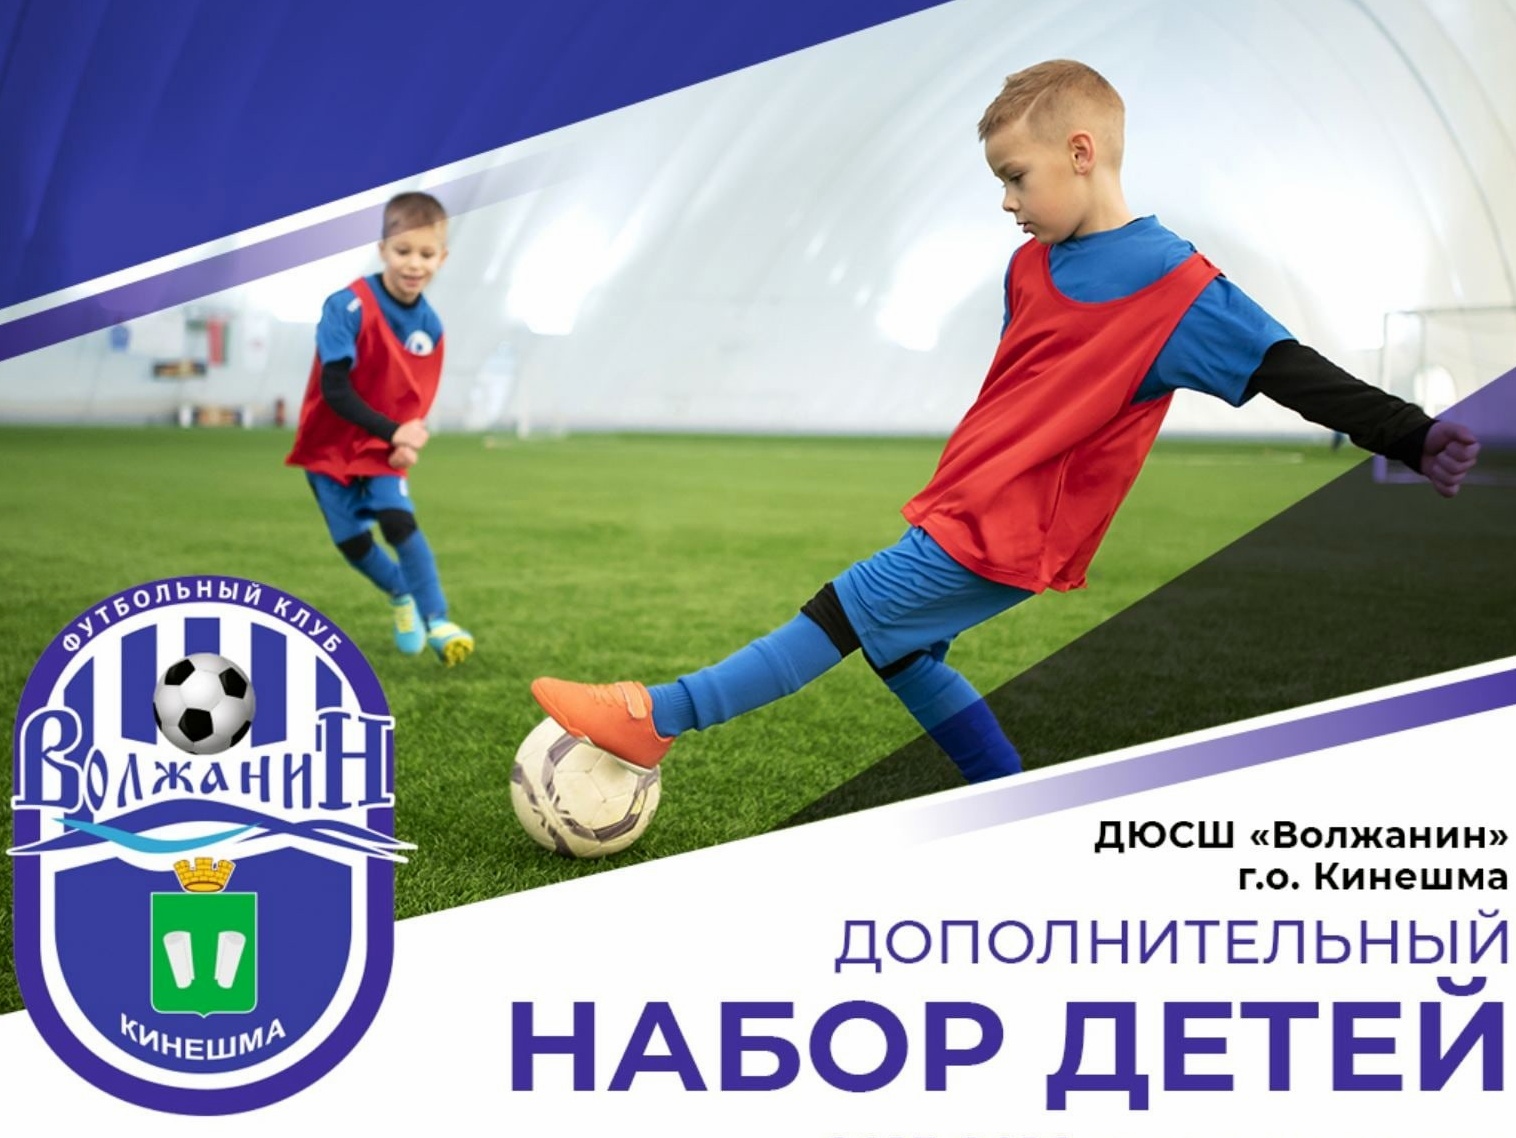 Спортшкола «Волжанин» объявила дополнительный набор в футбольную секцию